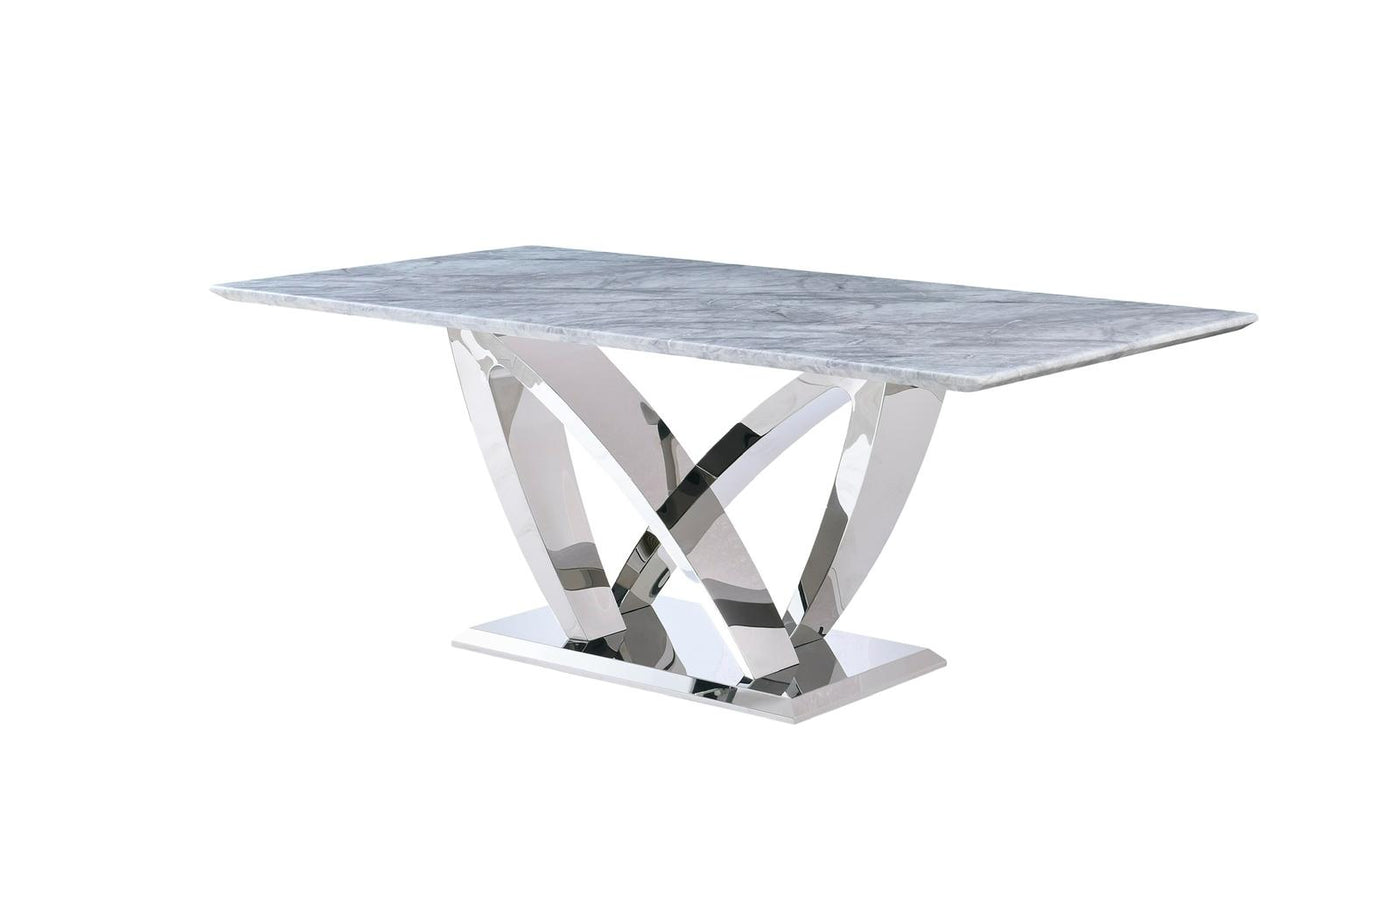 Amara 160cm Grey Marble & Chrome Dining Table